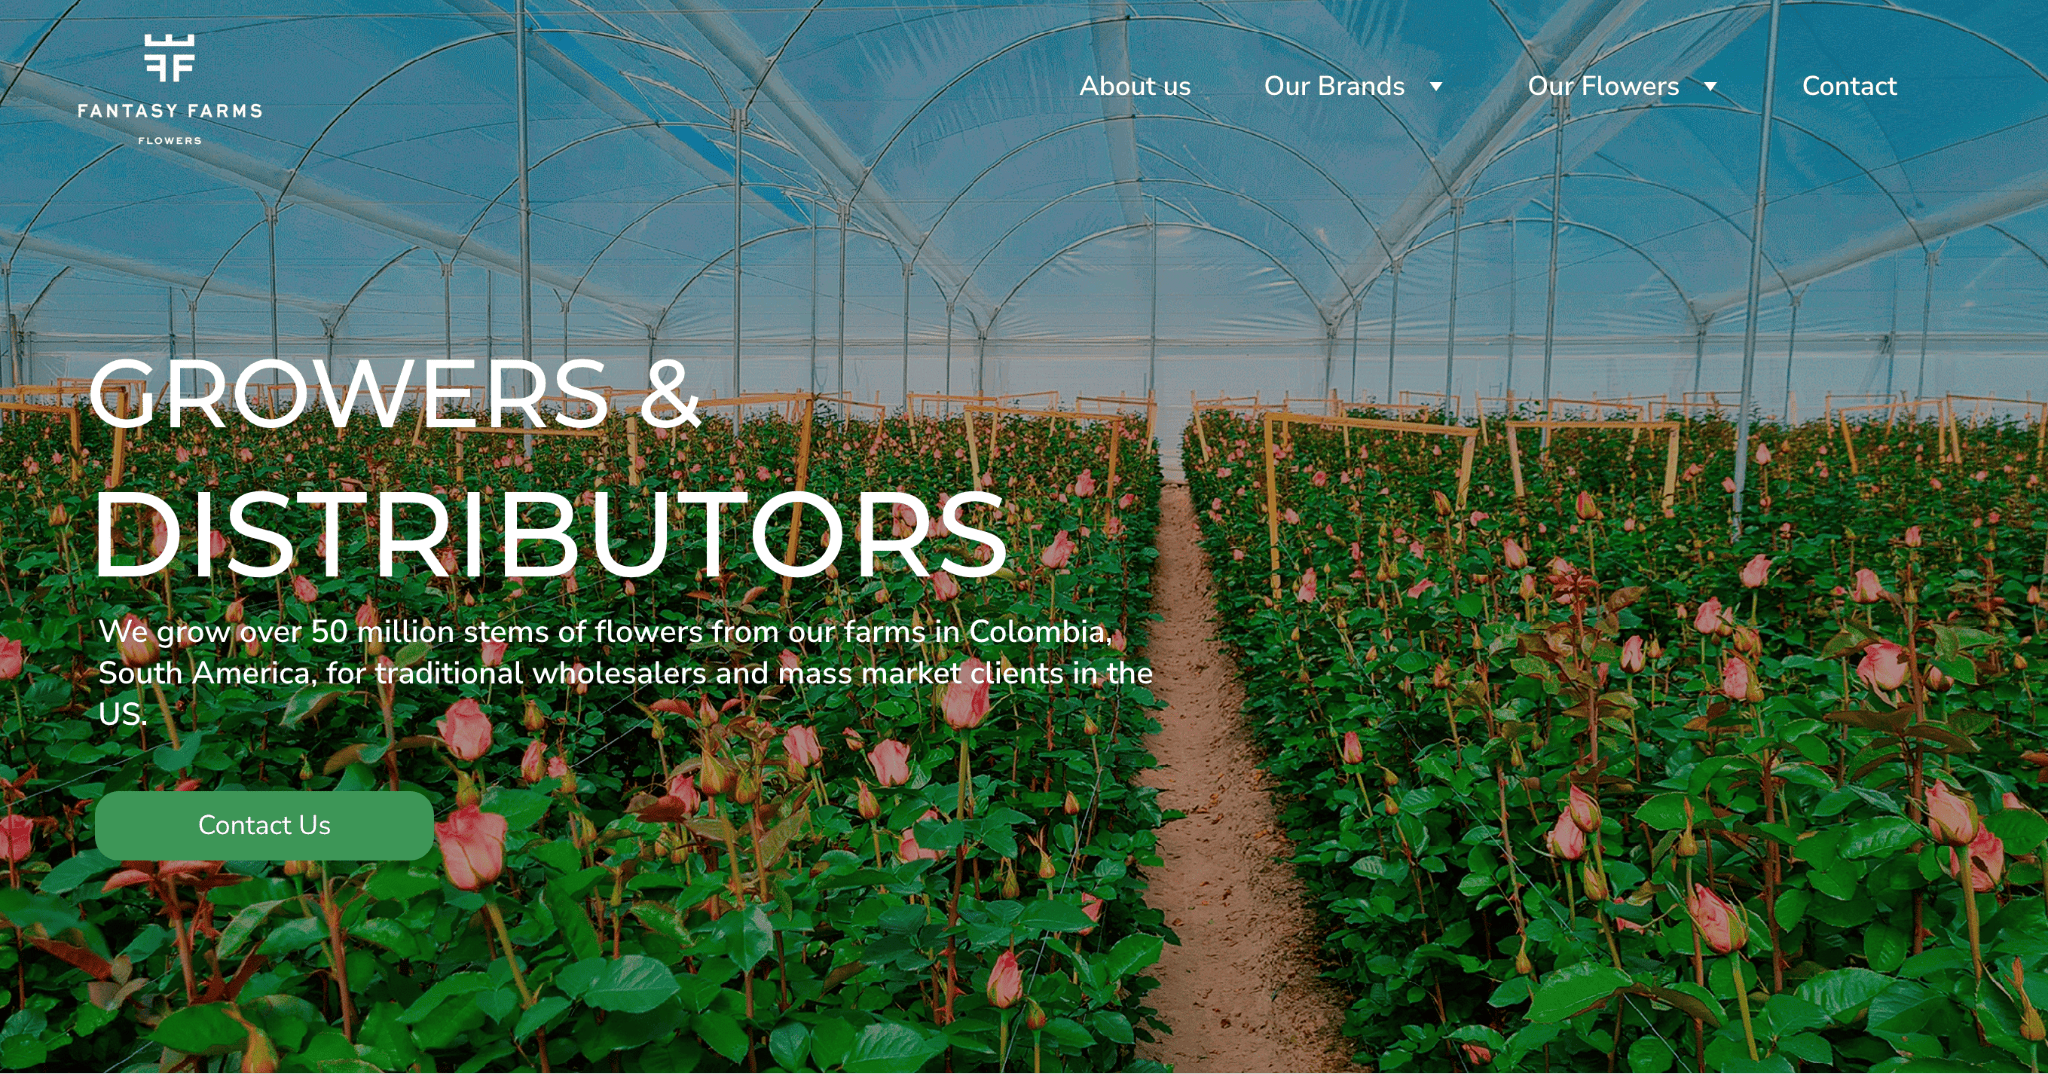 exemplu de site web zyro - ferme fantastice